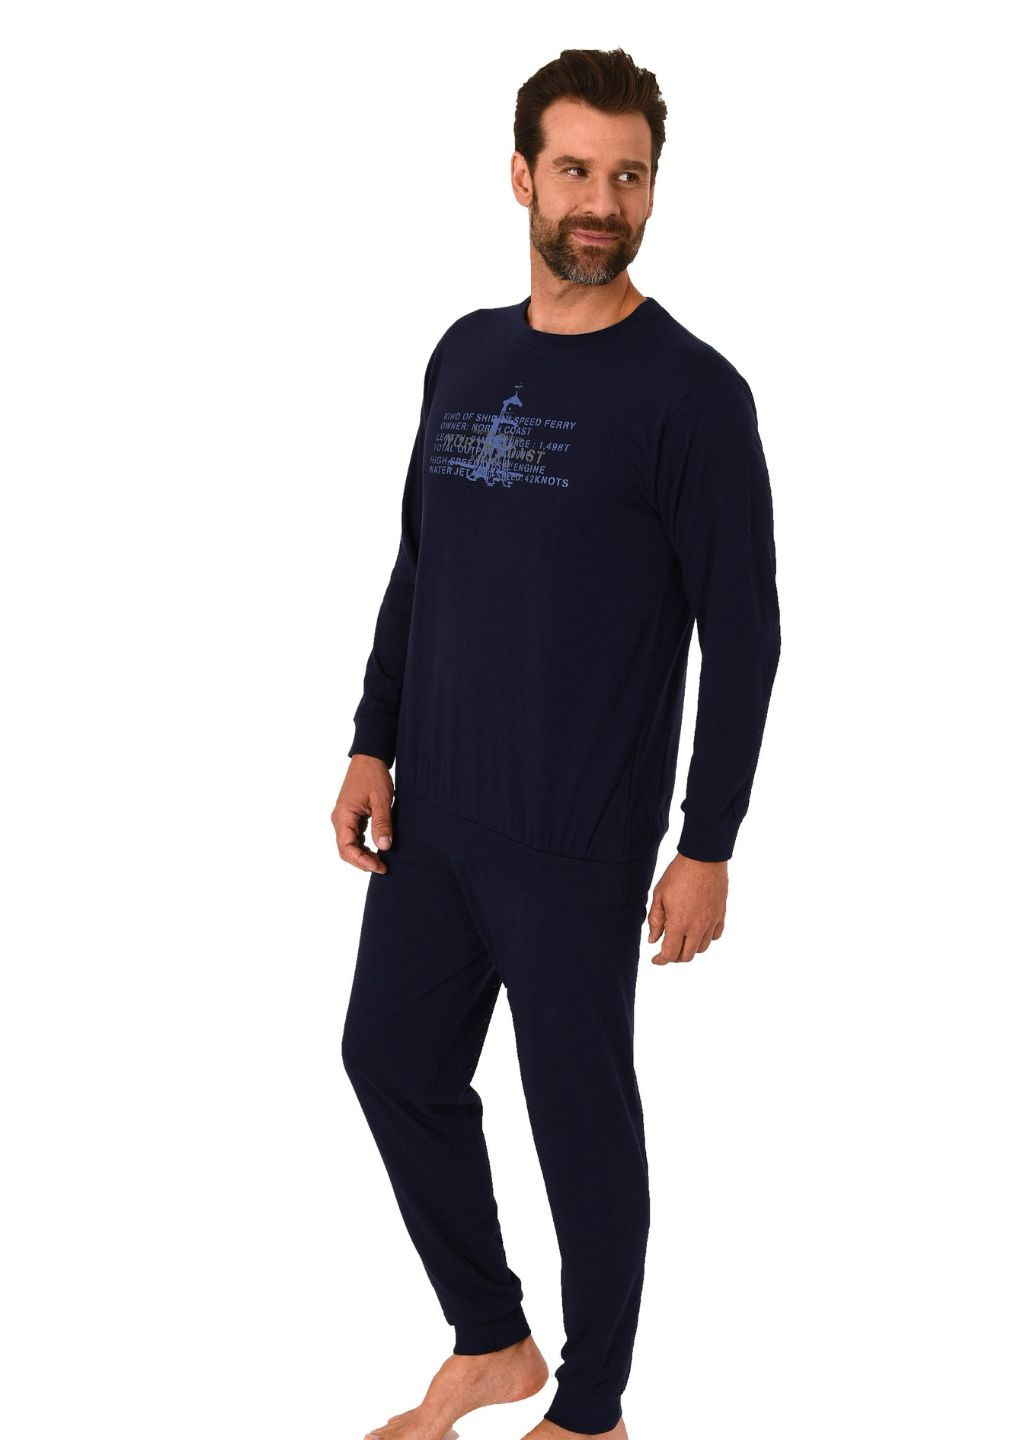 Мужская пижама. Натуральный хлопок Normann лонгслив + брюки рисунок синяя домашняя хлопок органический